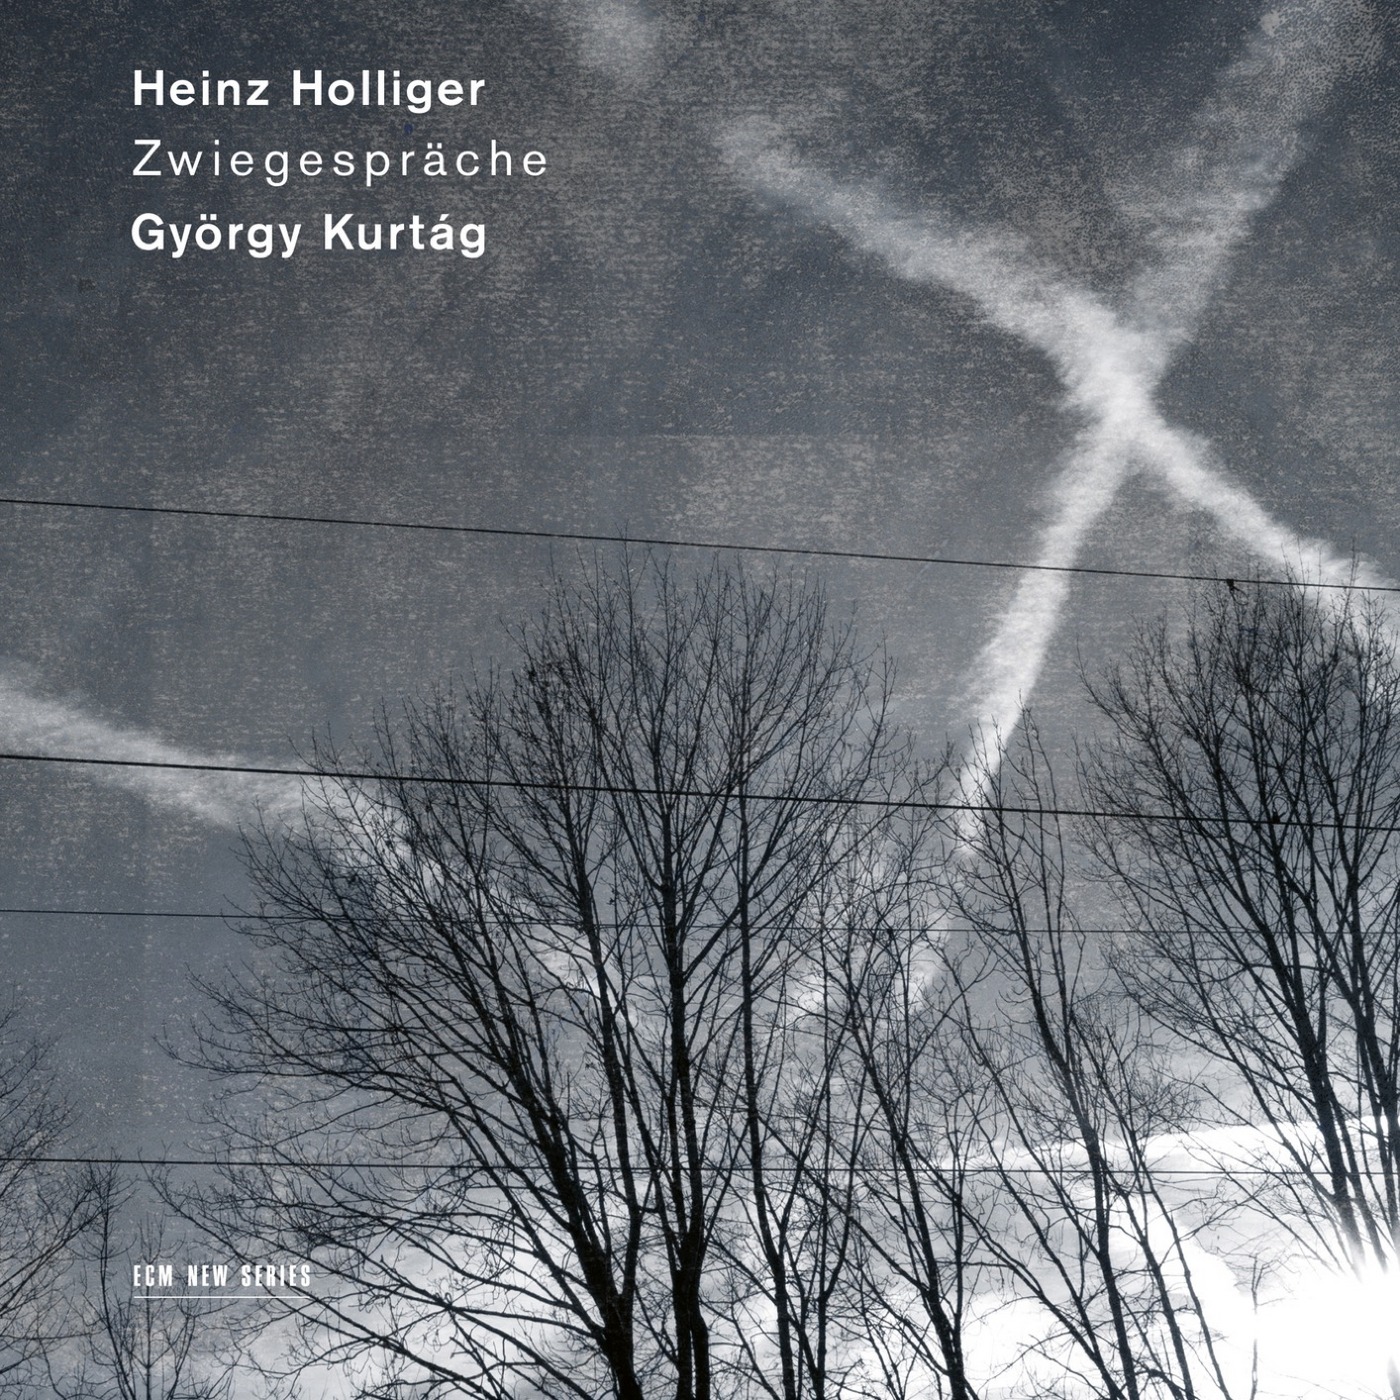 Heinz Holliger & Gyorgy Kurtag - Zwiegespräche (2019) [FLAC 24bit/96kHz]